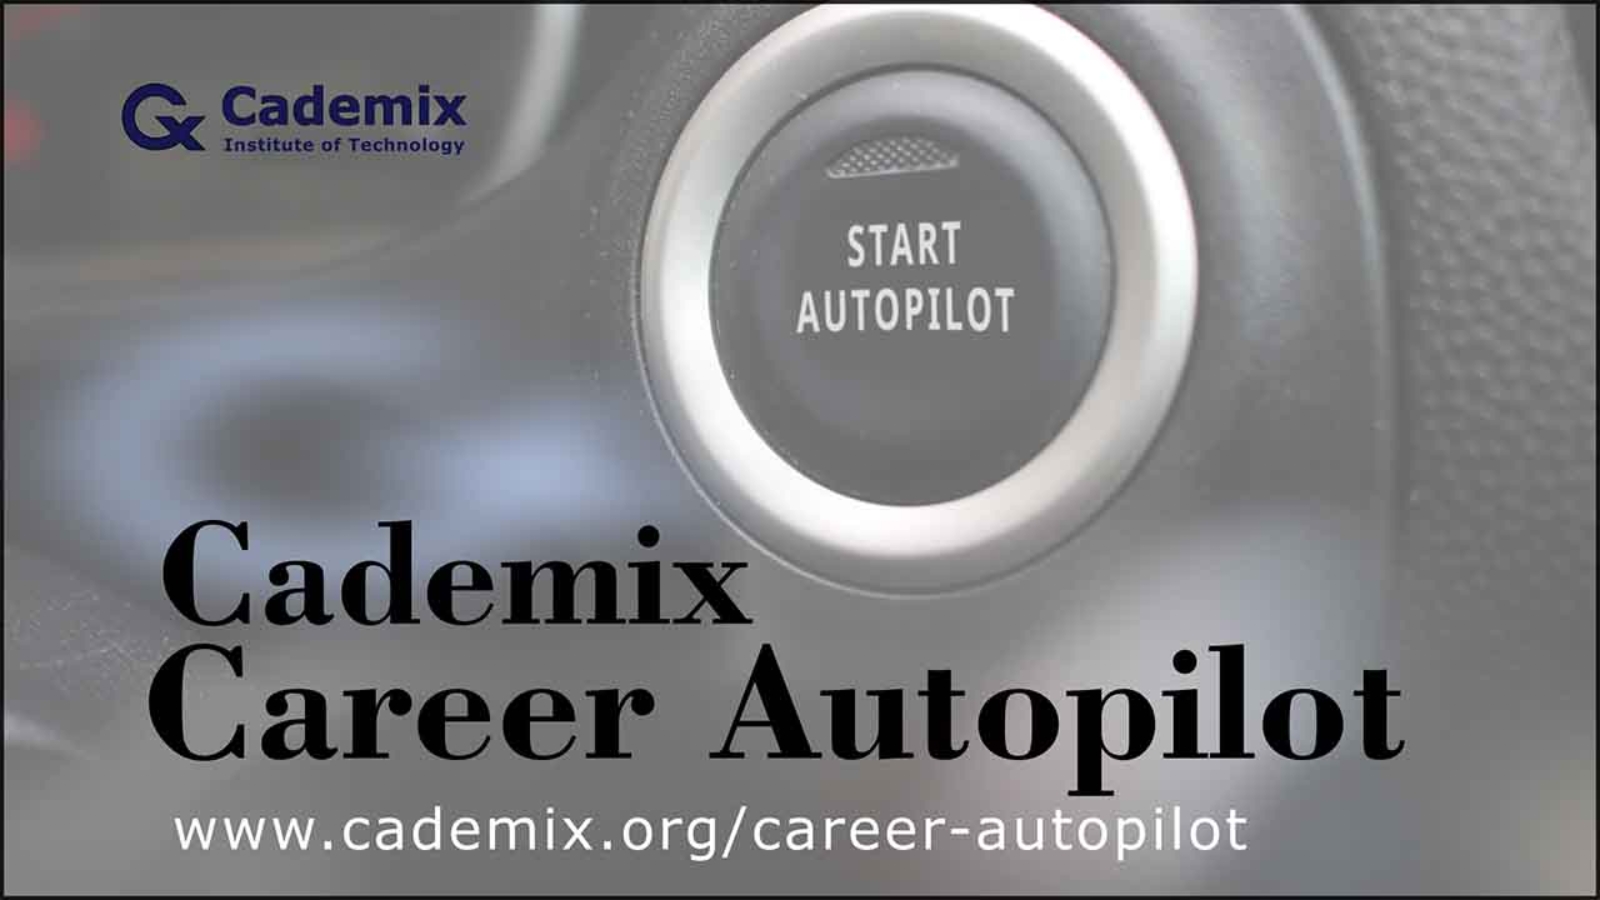 Career Autopilot - Cademix EU Job Placement and Upgrade Program for international Job Seekers Poster